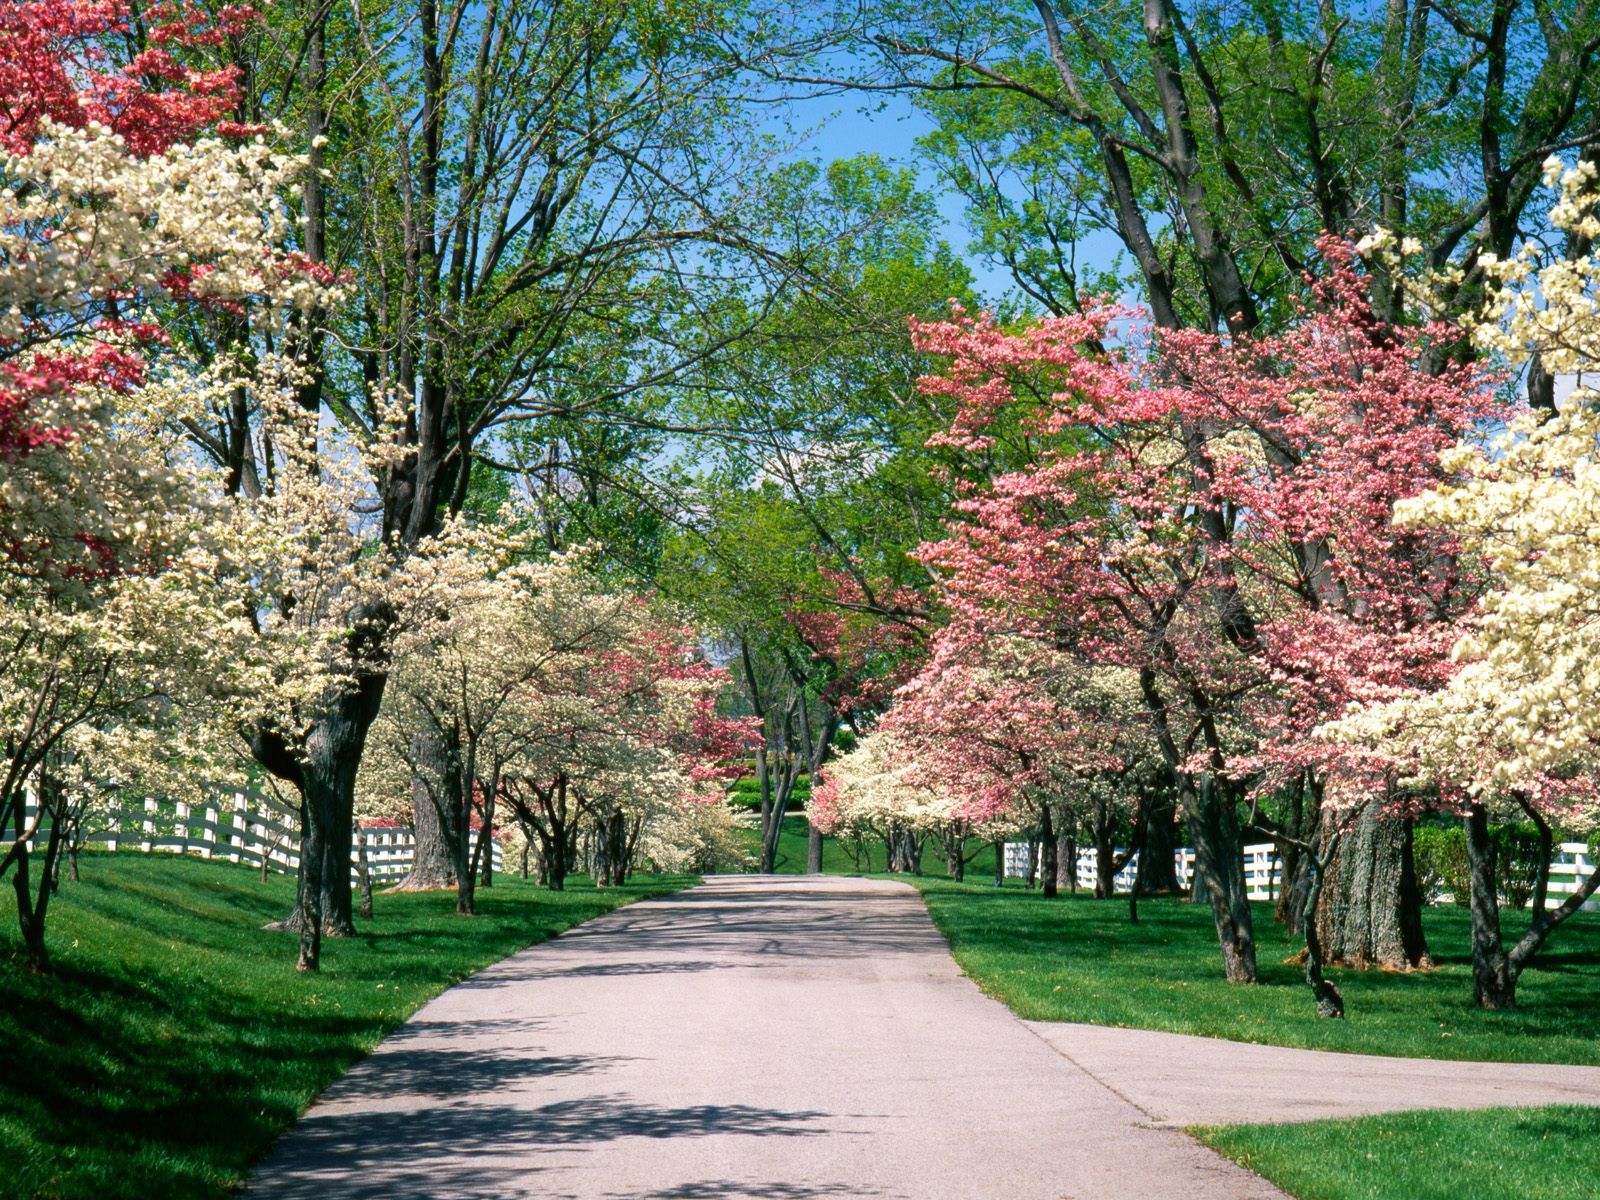 عکس زیبا از پارک در فصل بهار